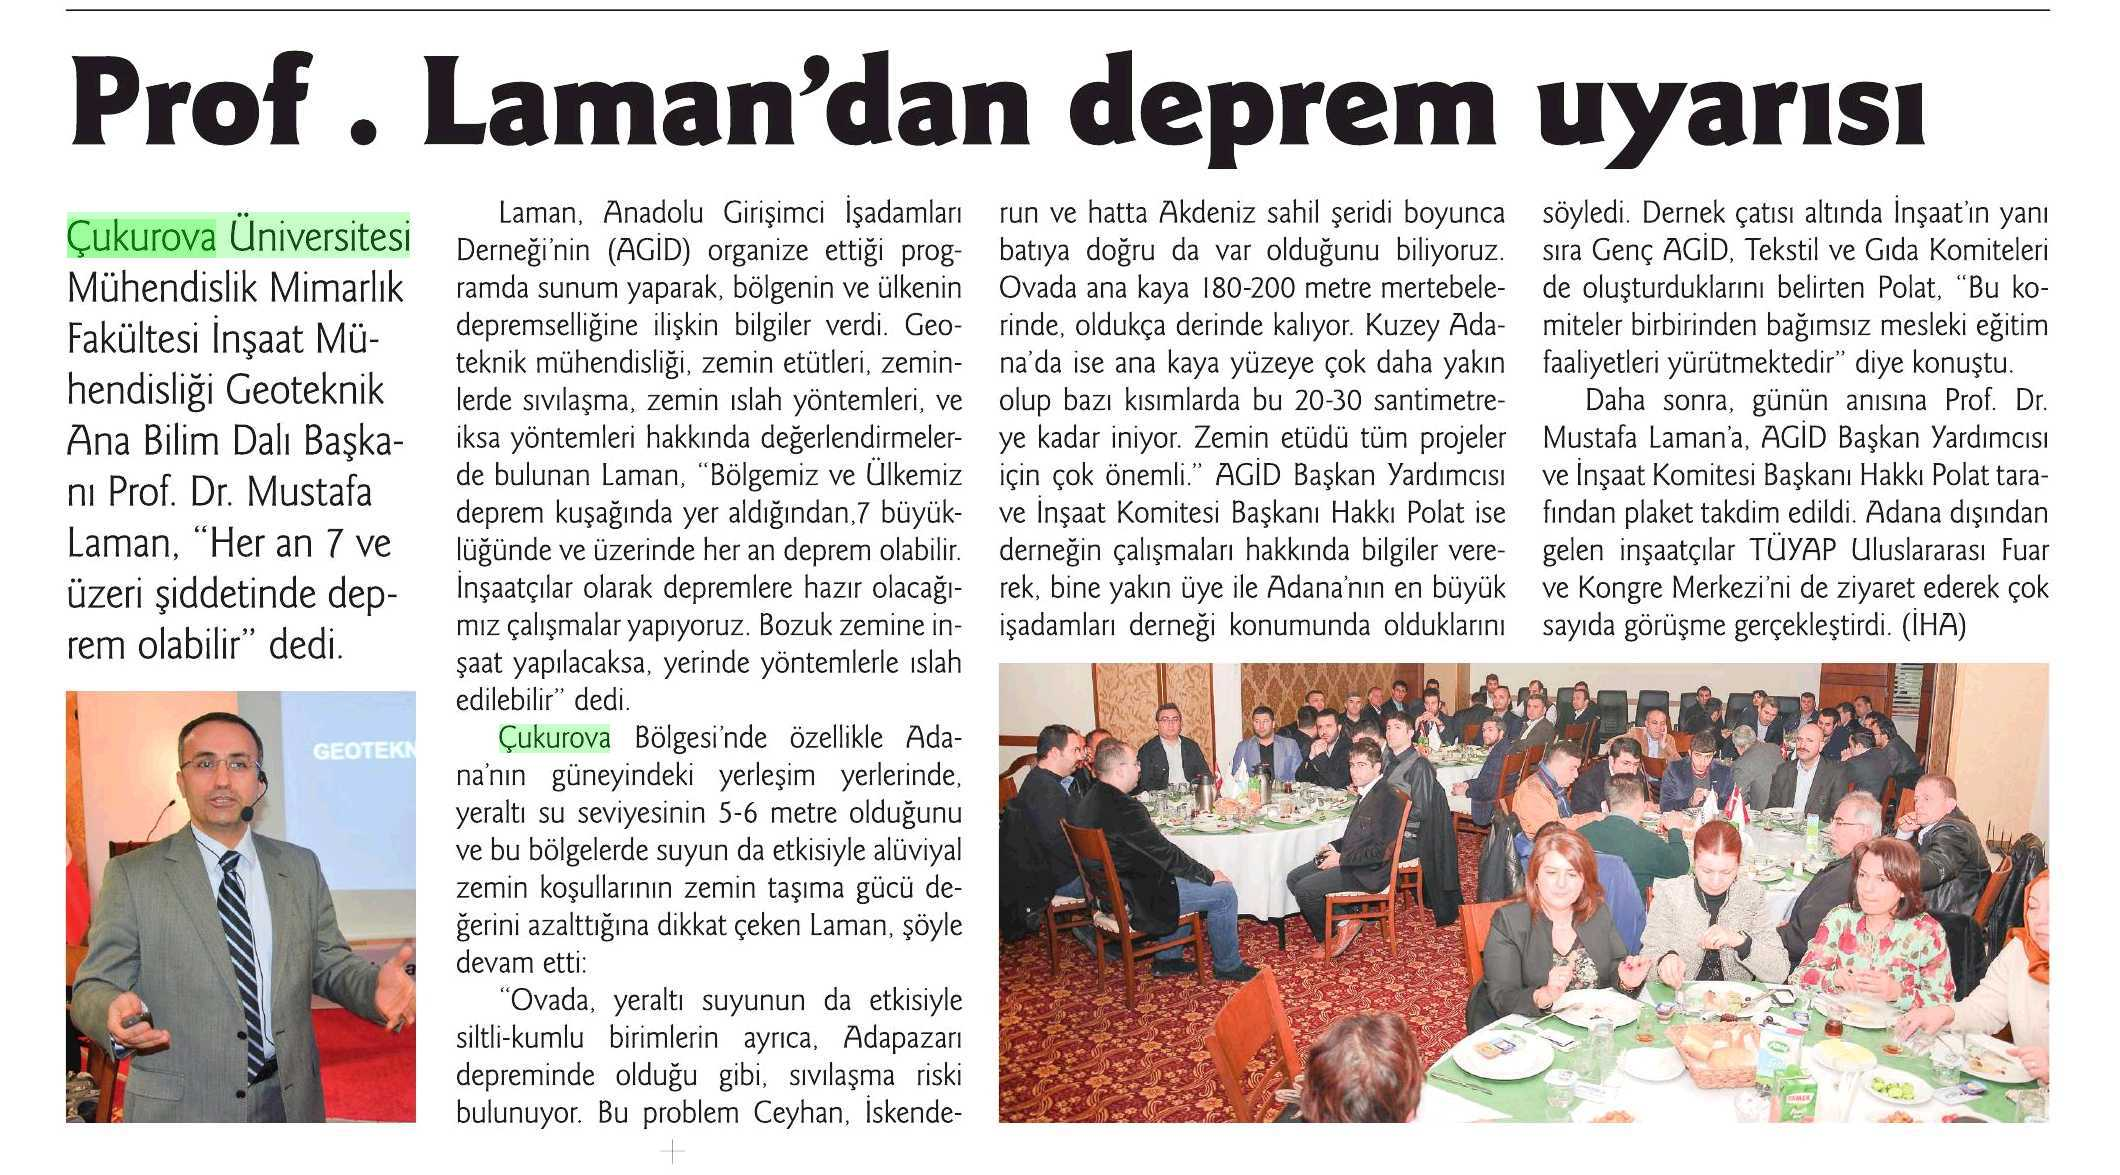 PROF. LAMAN'DAN DEPREM UYARISI Yayın Adı : Adana